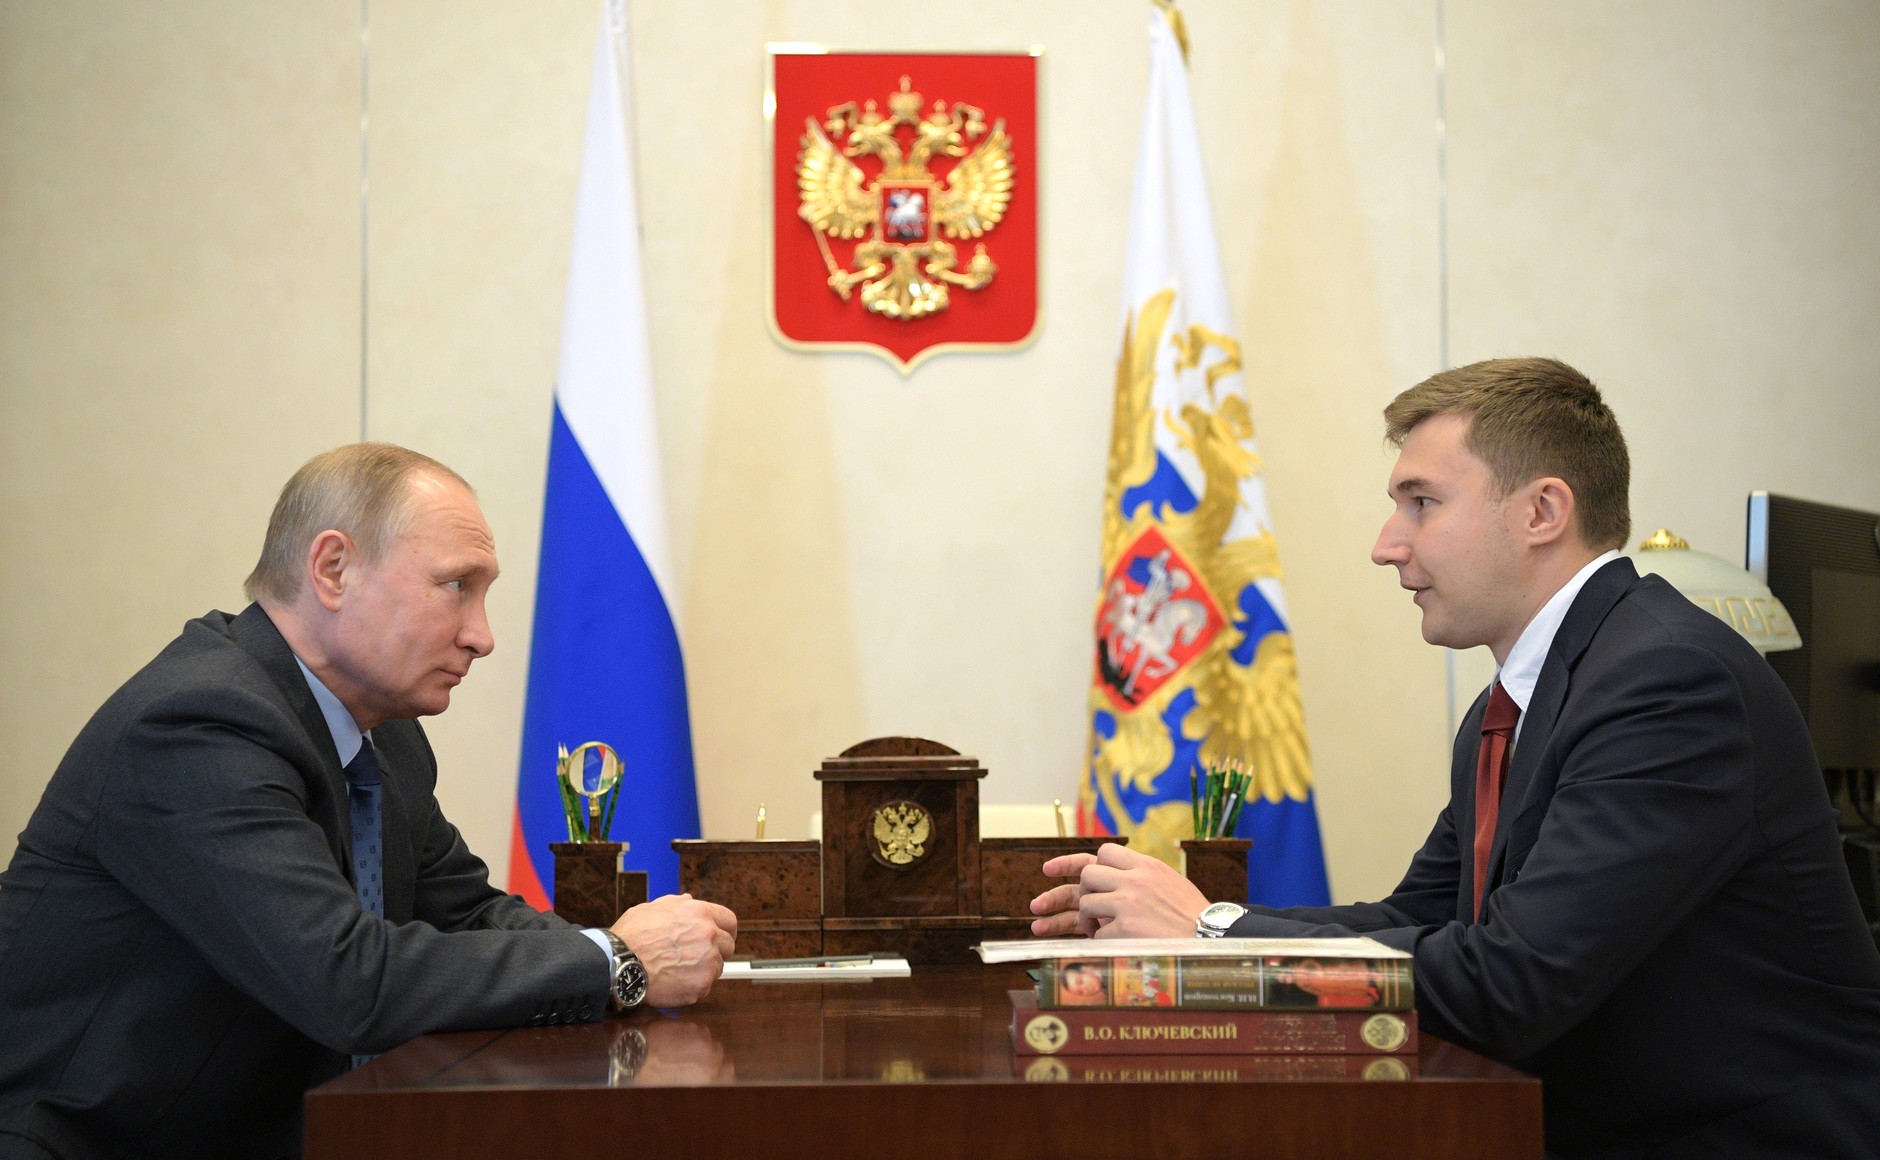 Vladimir_Putin_and_Sergey_Karjakin_(2017-07-06)_01